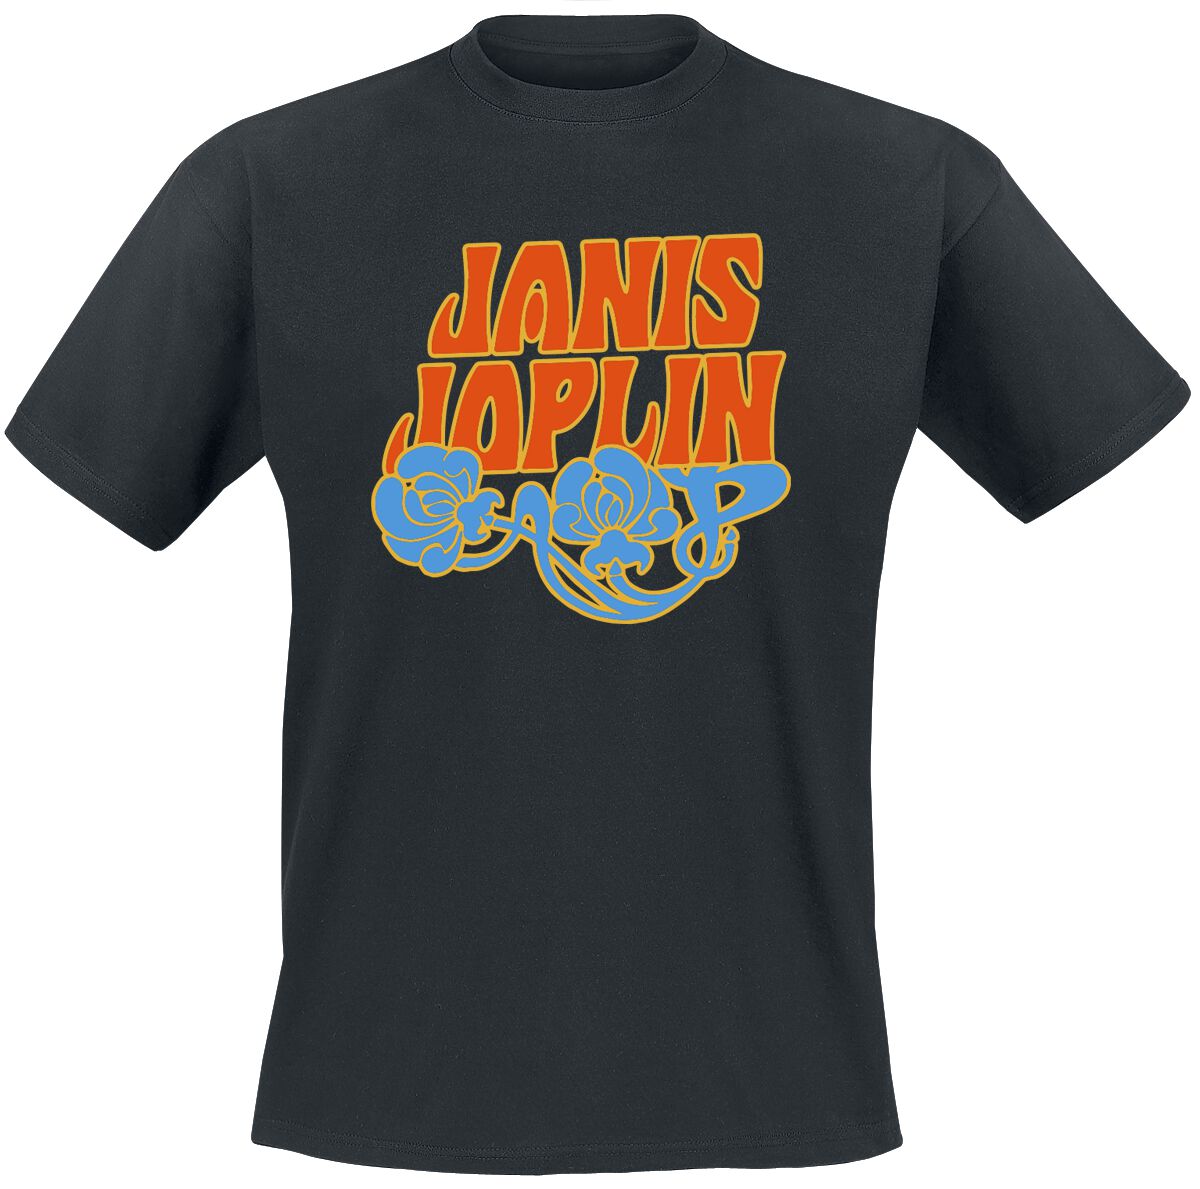 Joplin, Janis T-Shirt - Floral Logo - S bis XXL - für Männer - Größe L - schwarz  - EMP exklusives Merchandise!